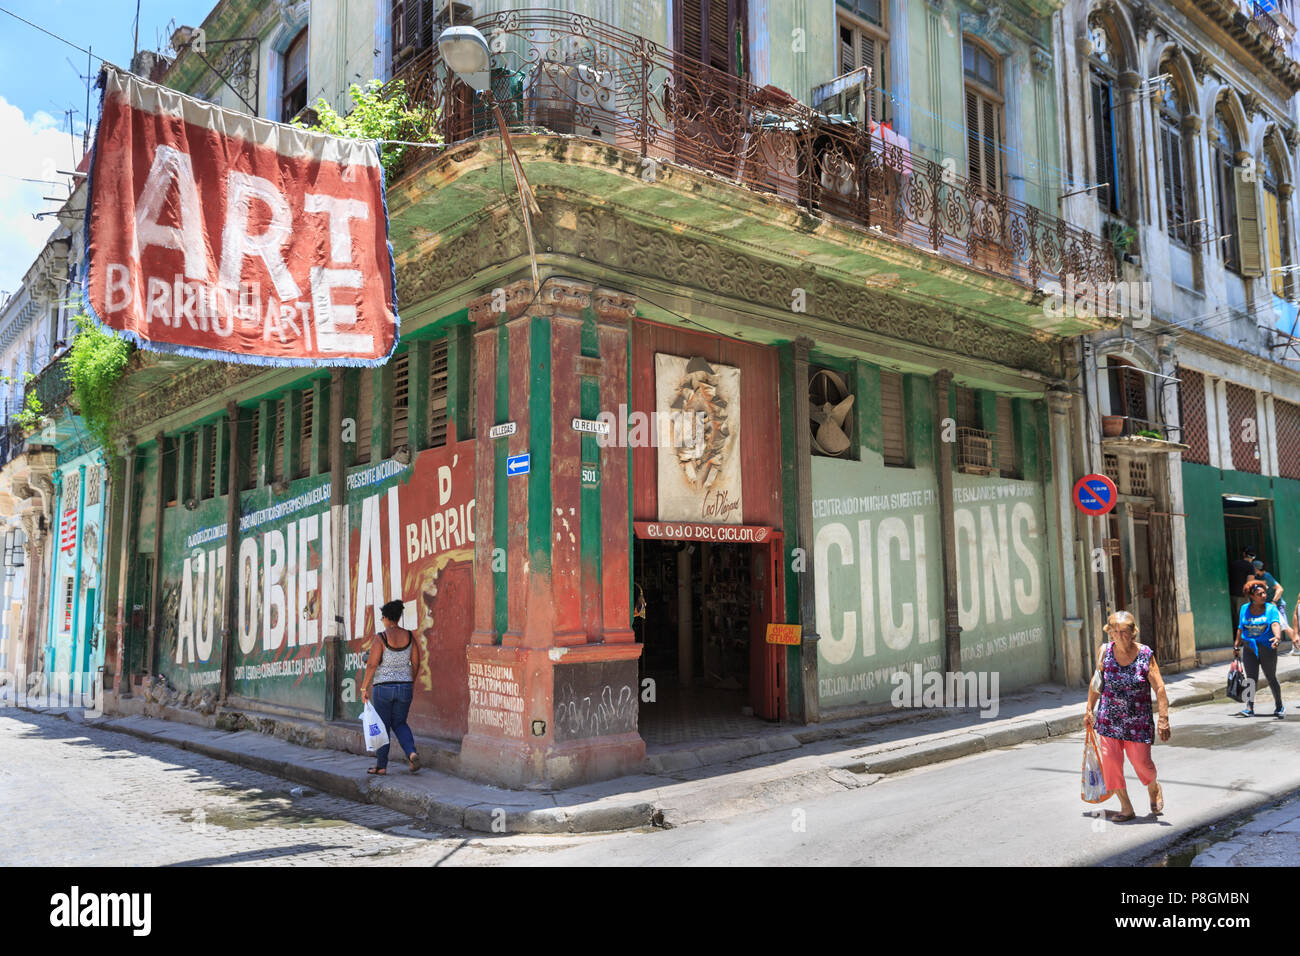 Galerie art Studio und Shops auf der O'Reilly und Villegas Straßen mit Barrio del Arte Banner von der Autobienal Kunstausstellung, Havanna, Kuba Stockfoto